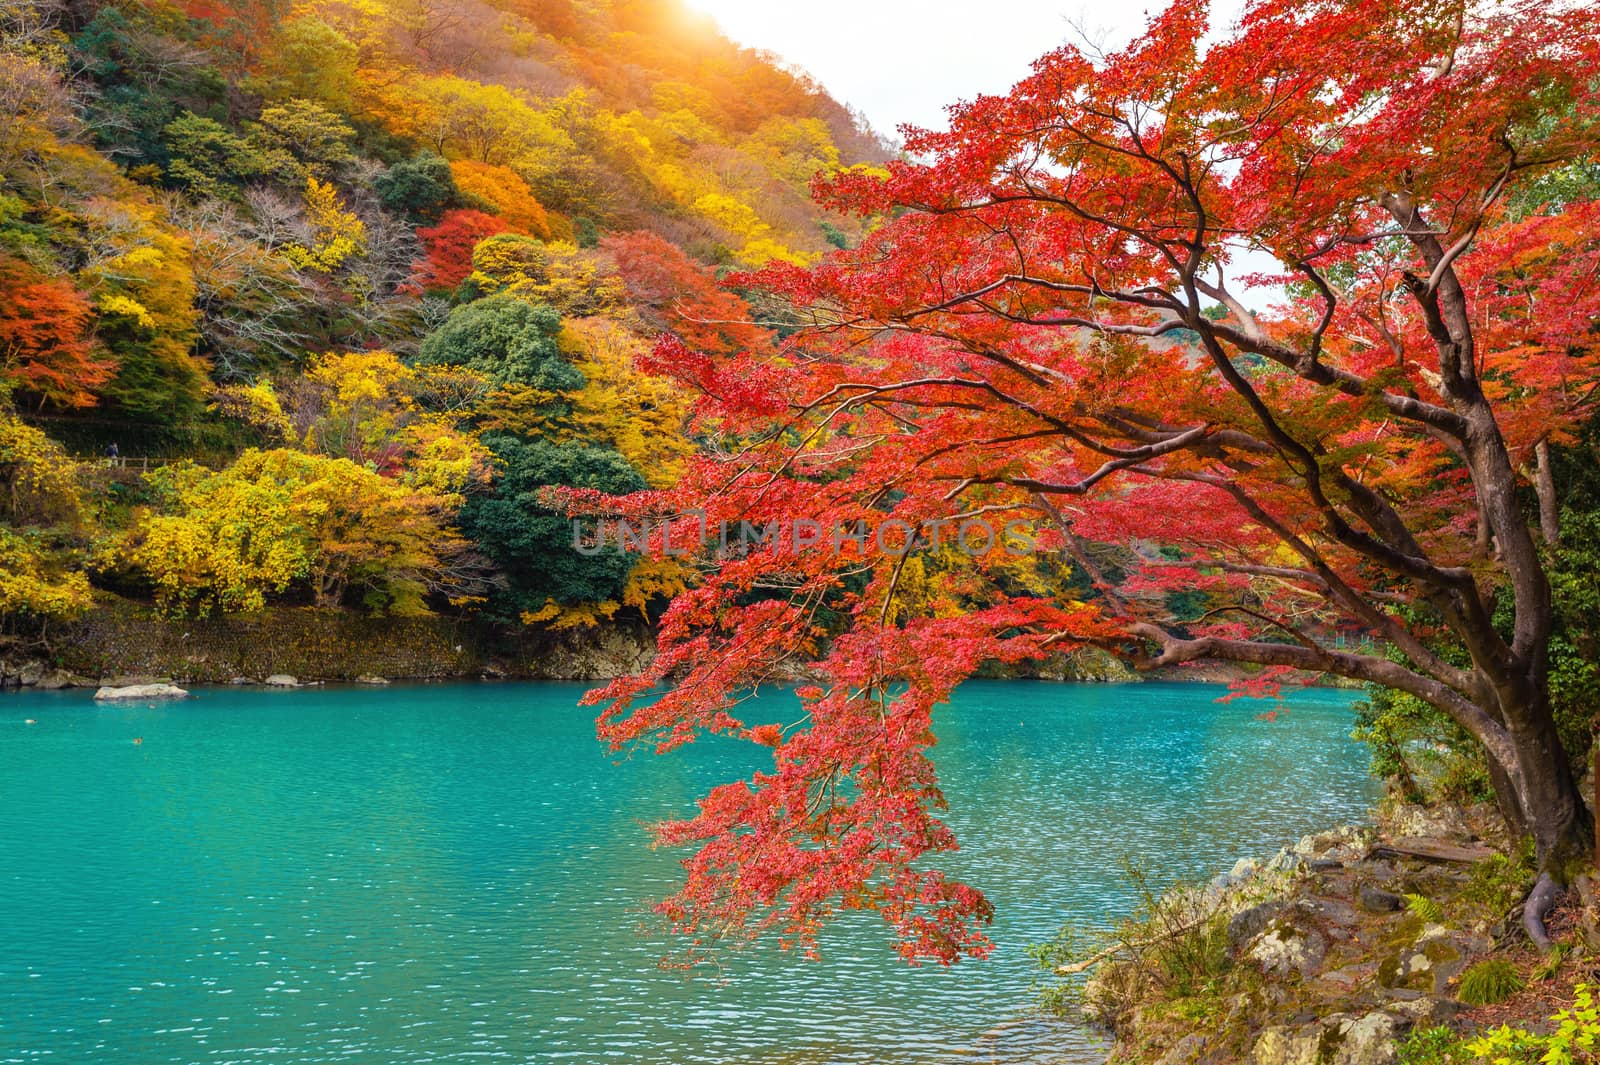 Arashiyama in autumn season along the river in Kyoto, Japan.